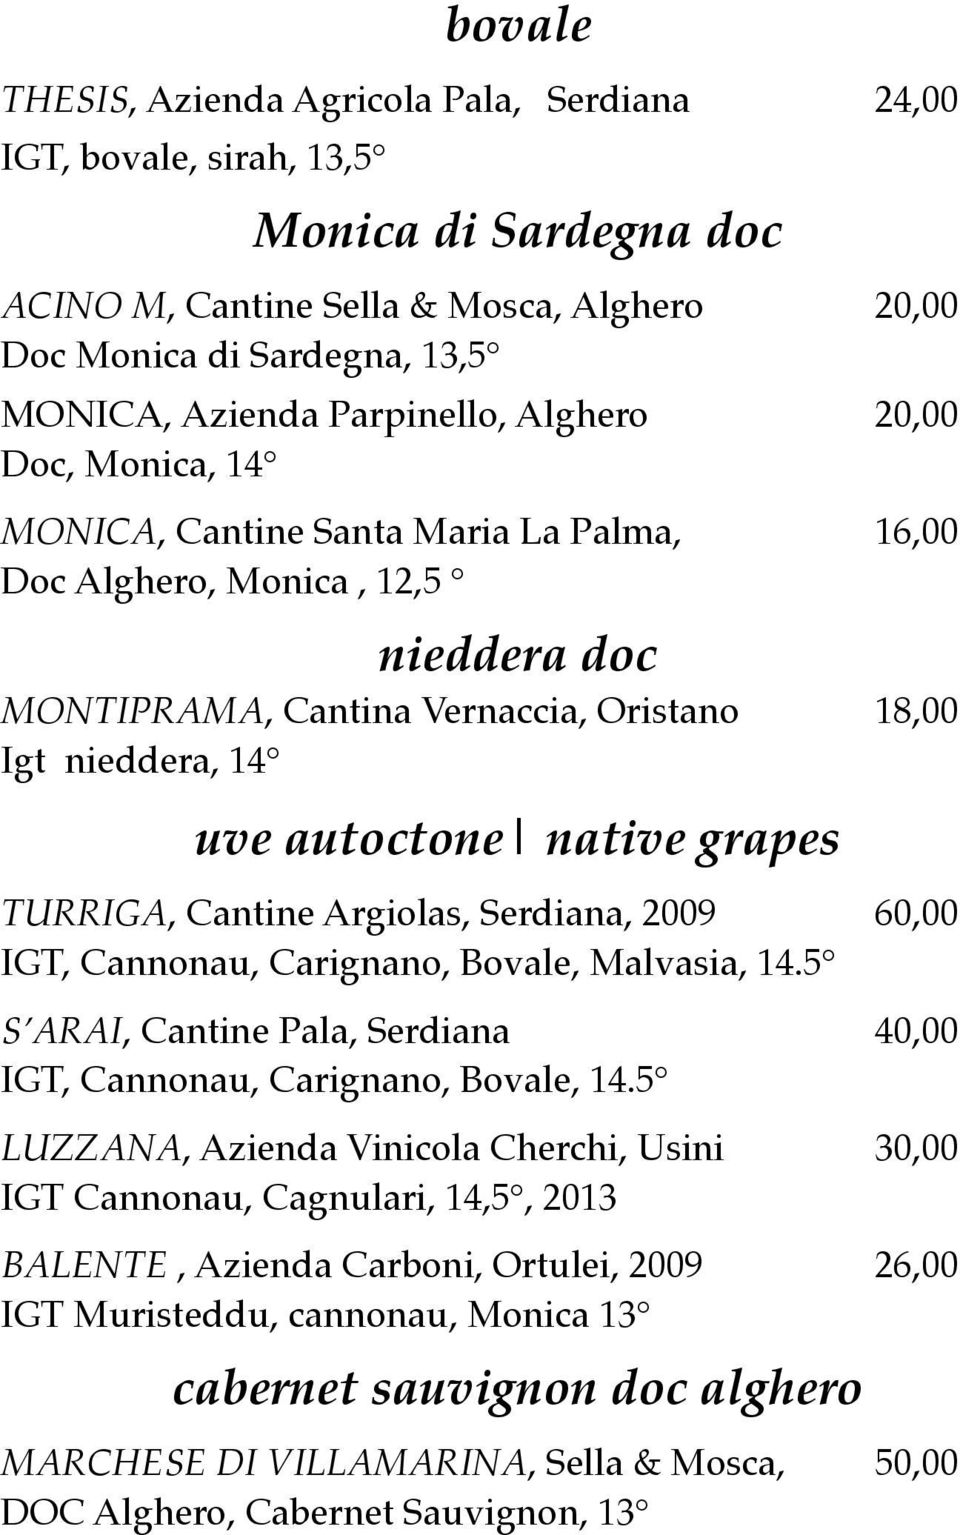 autoctone native grapes TURRIGA, Cantine Argiolas, Serdiana, 2009 60,00 IGT, Cannonau, Carignano, Bovale, Malvasia, 14.5 S ARAI, Cantine Pala, Serdiana 40,00 IGT, Cannonau, Carignano, Bovale, 14.